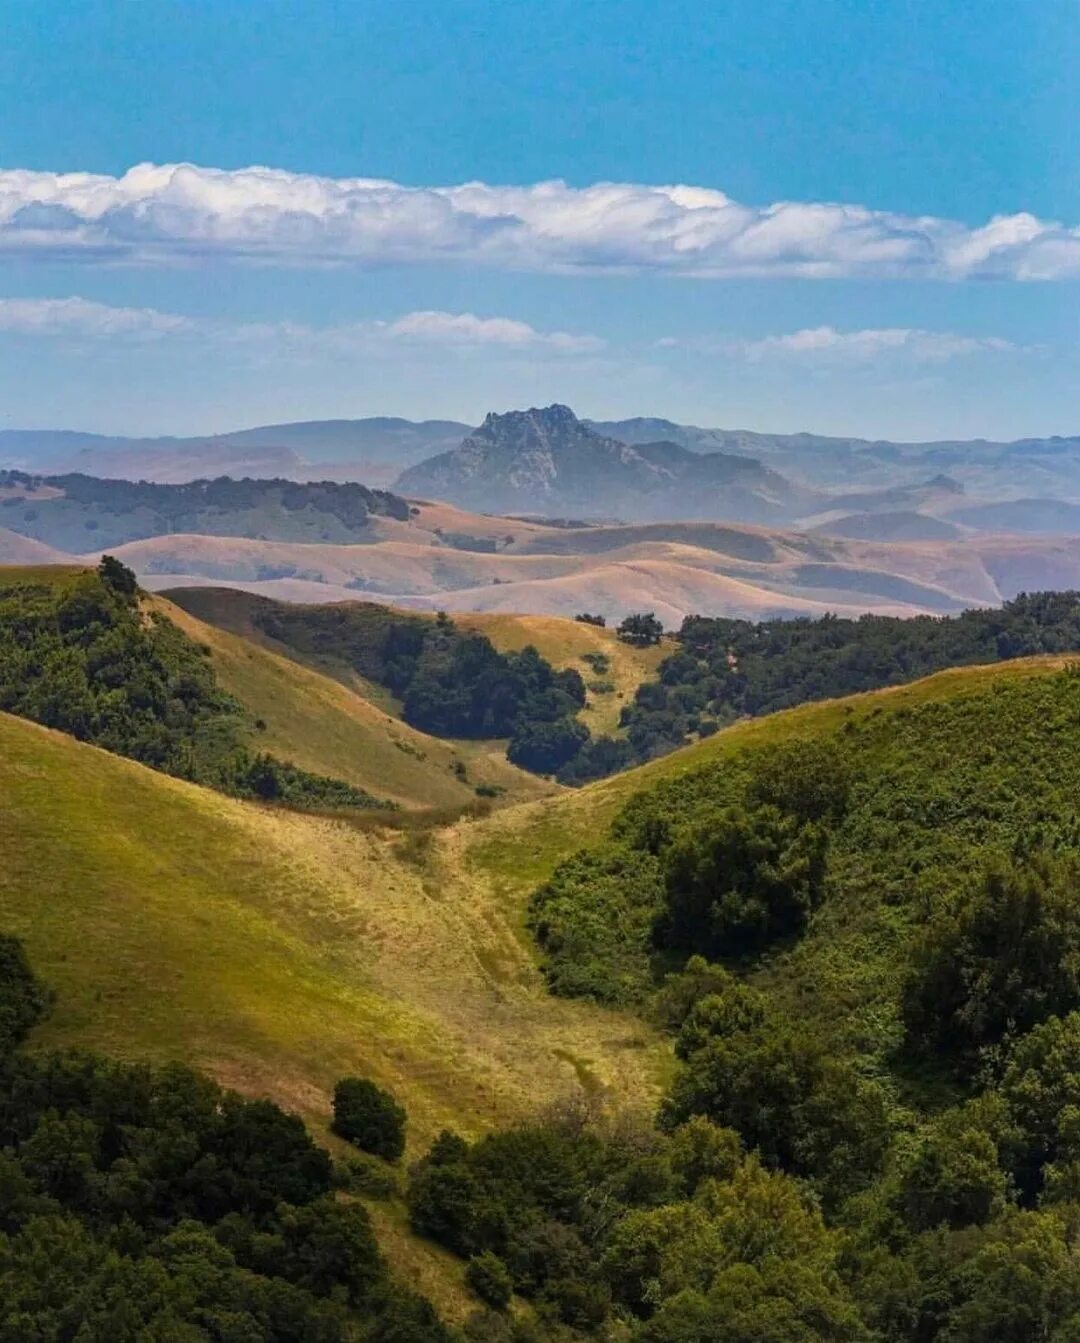 San Luis Obispo Guide в Instagram: "Sometimes it feels like the views ...